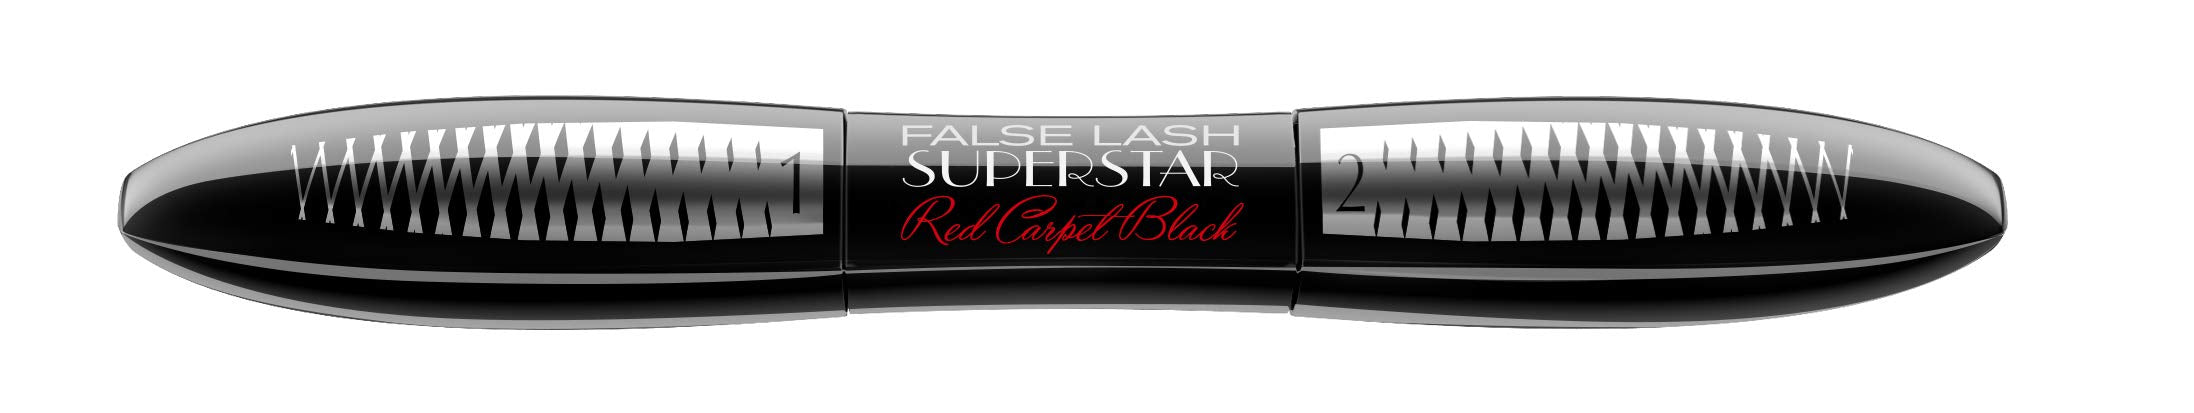 L'Oréal Paris False Lash Superstar Red Carpet Black Mascara, czarny – tusz do rzęs do bardzo gęstych i optycznie przedłużonych rzęs, 1 opakowanie (1 x 13 ml)